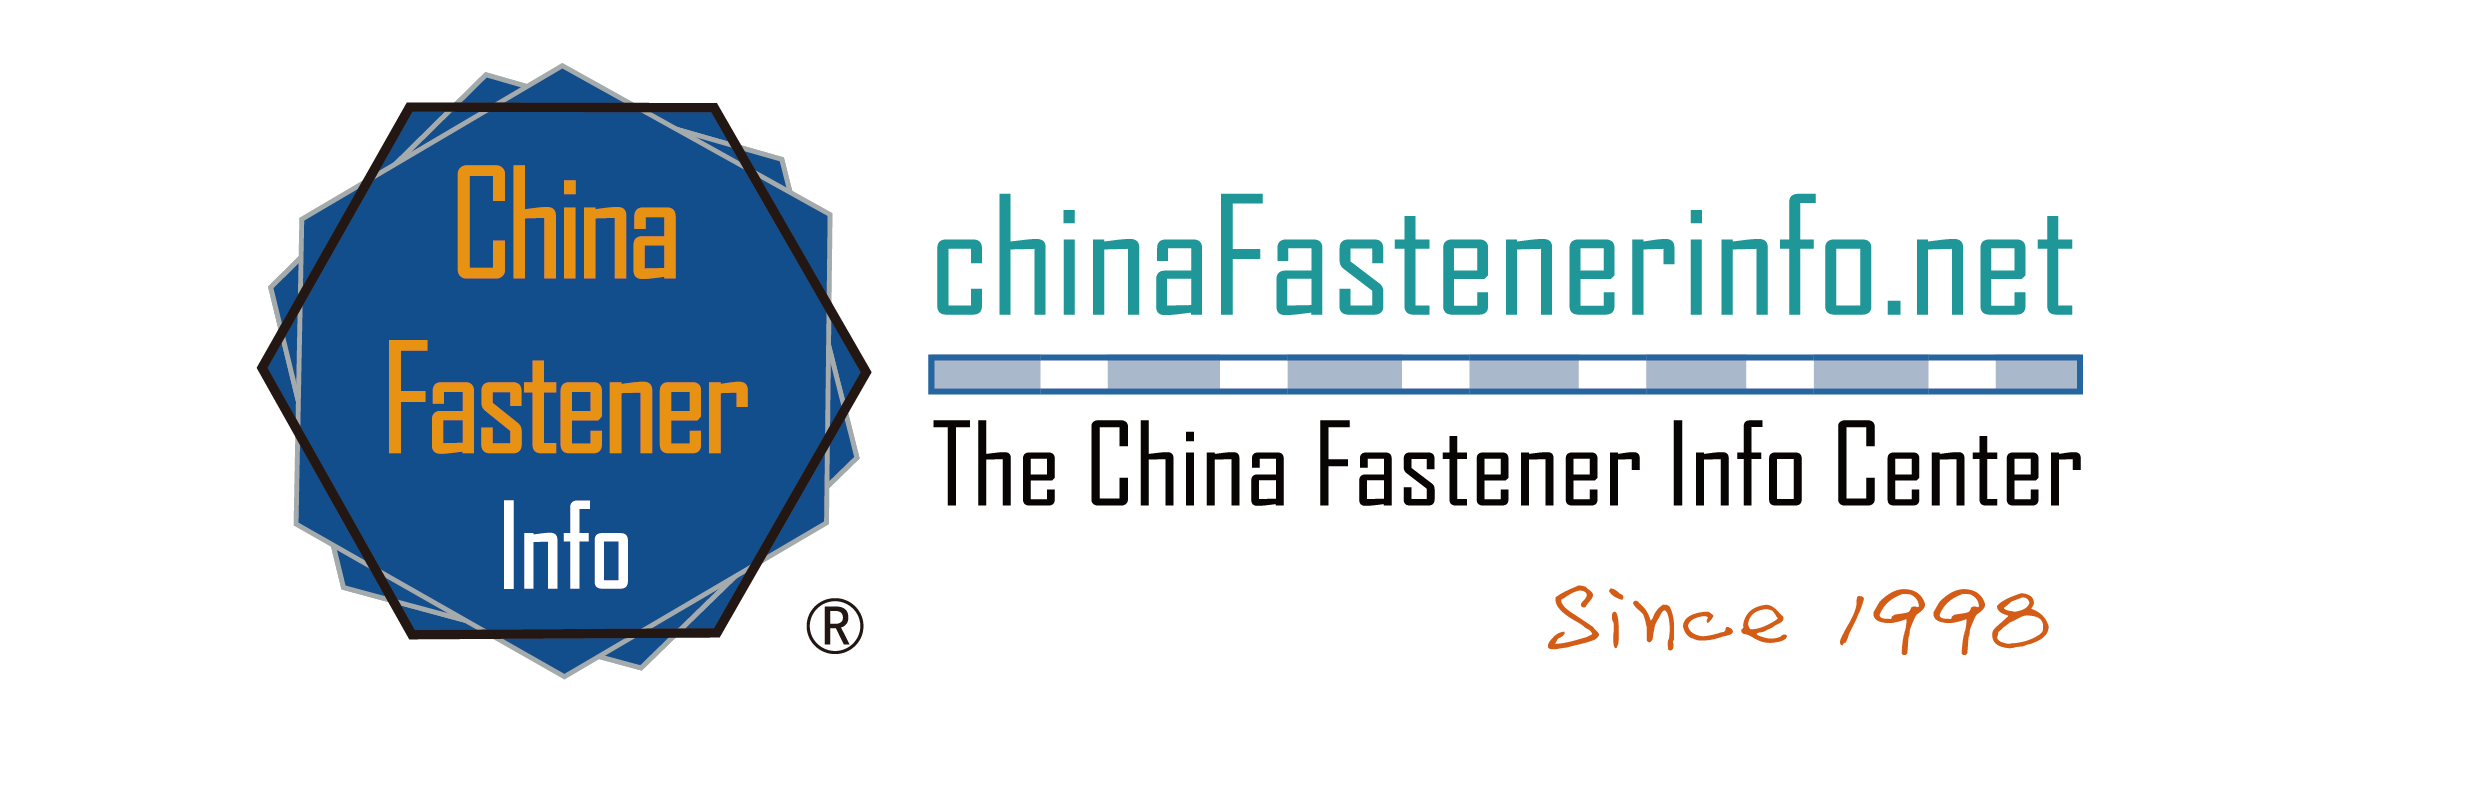 chinafastenerinfo.net